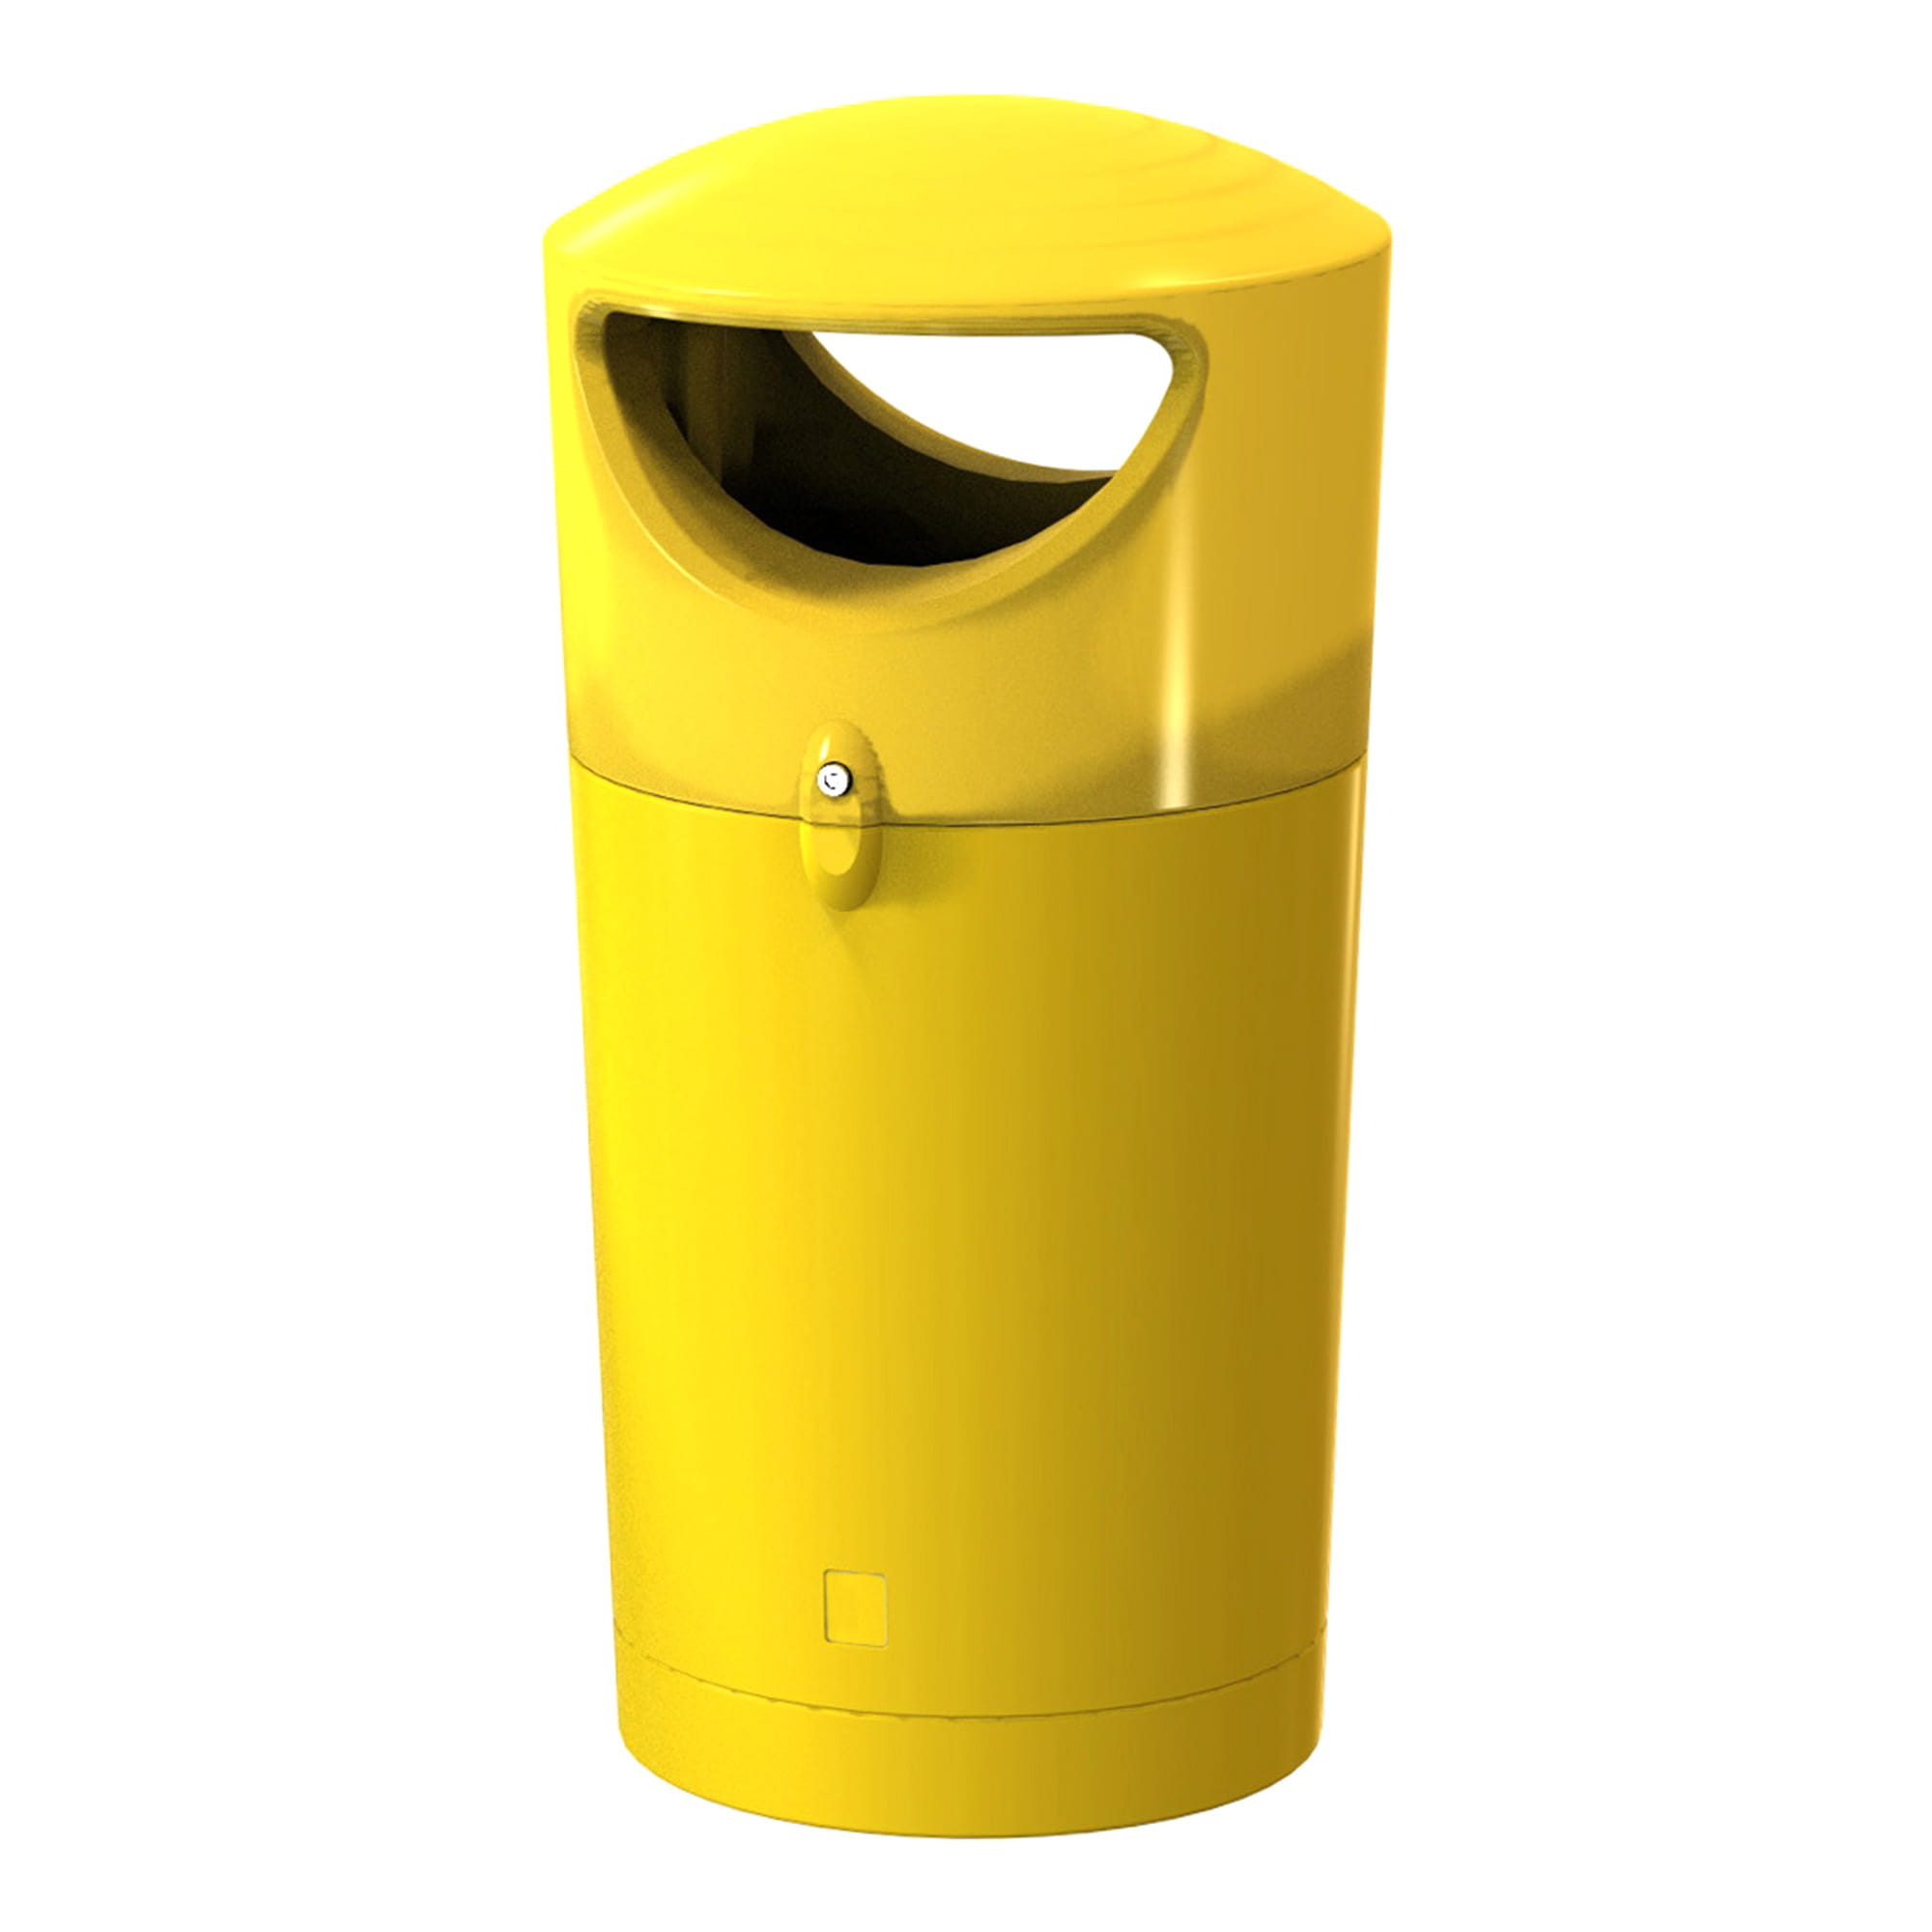 Sarima Metro Hooded Abfallhälter 100 Liter 2 Einwurföffnungen gelb 31719259_1